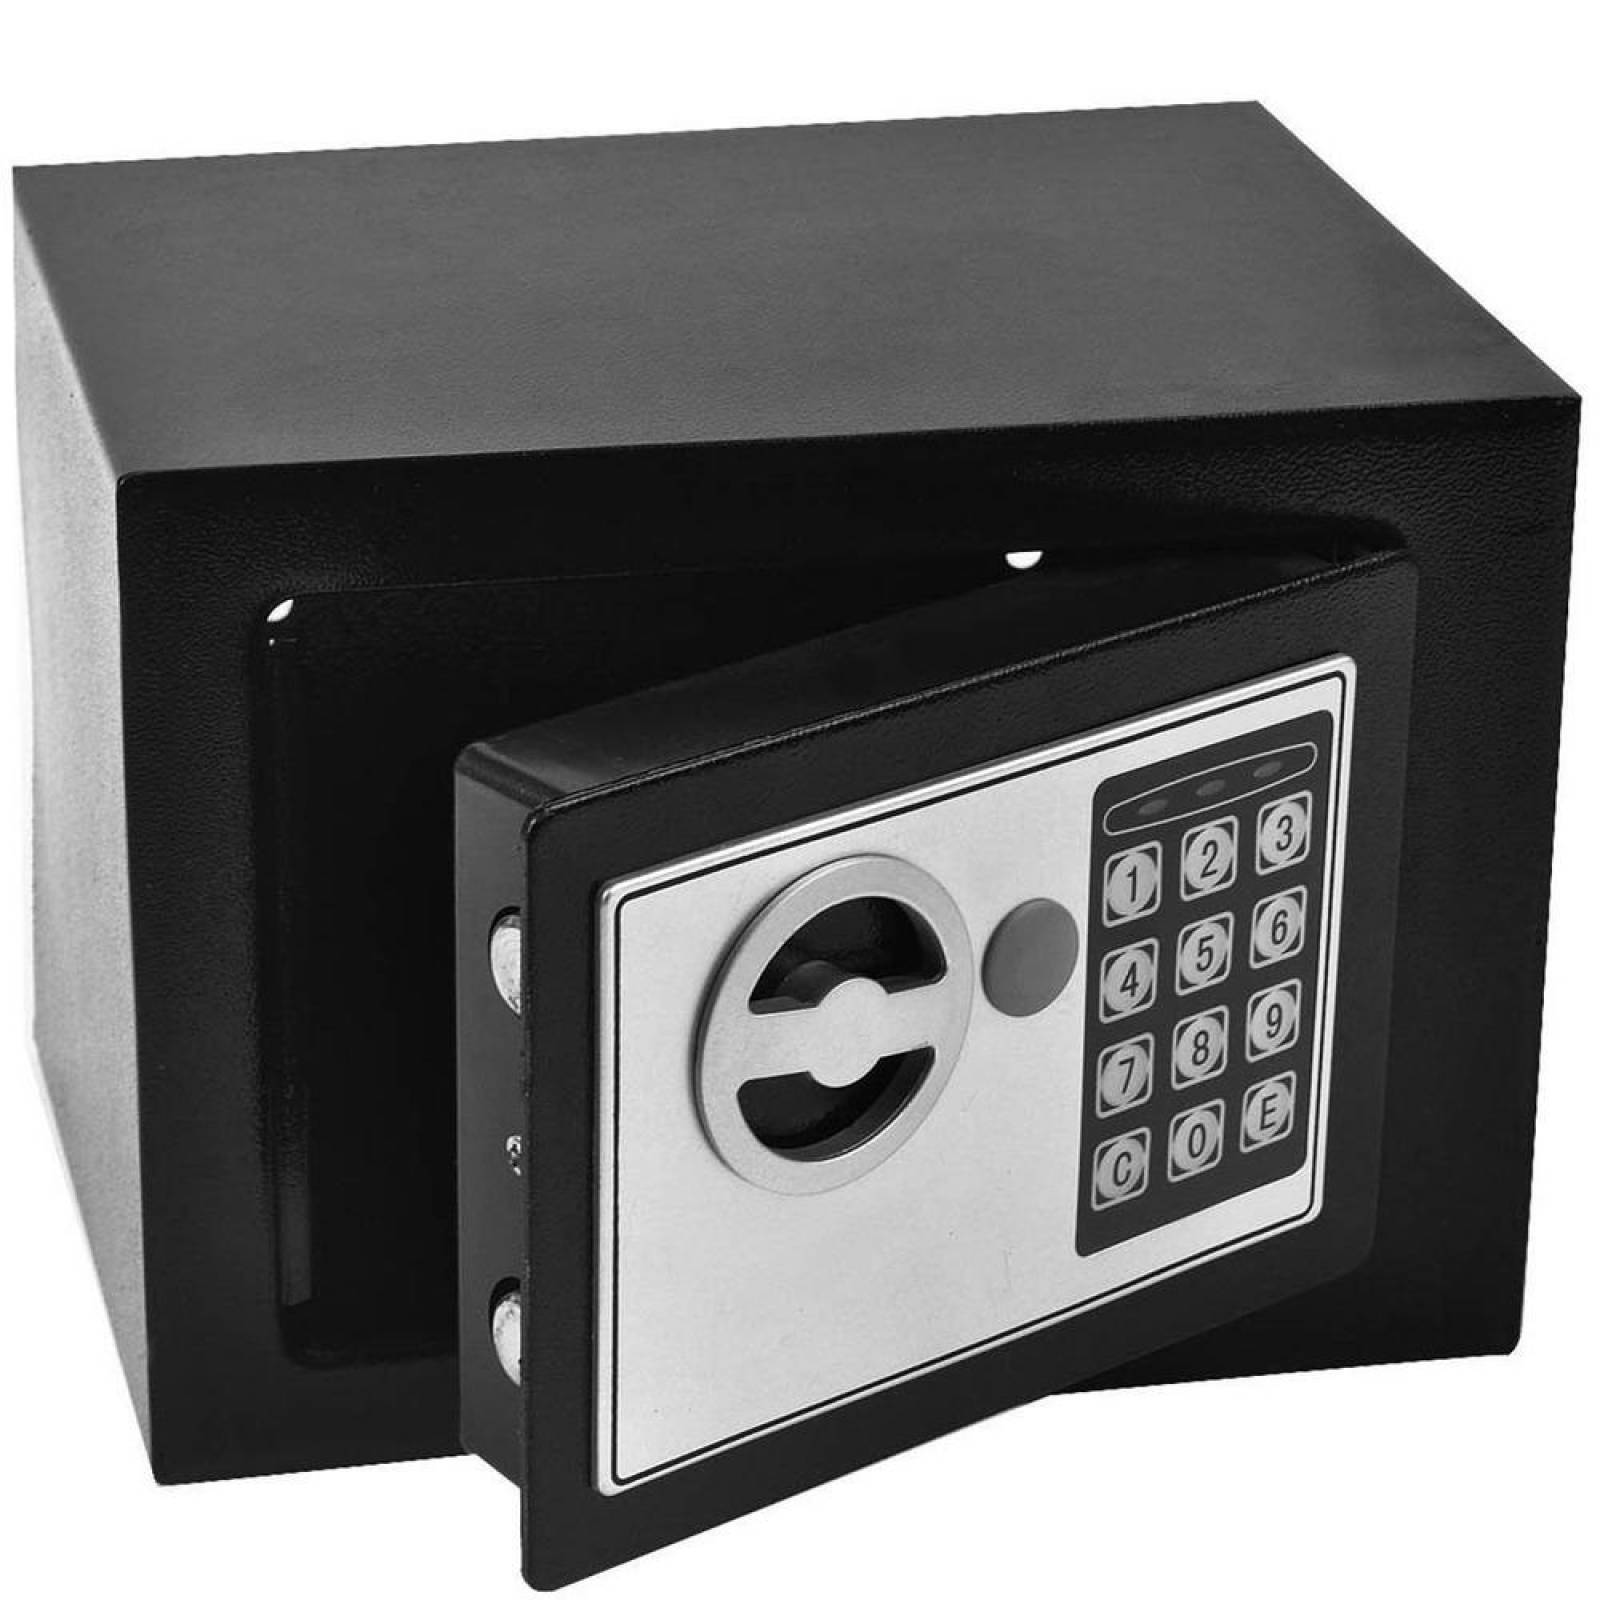 Caja Fuerte Electronica De Seguridad Codigo Digital Y Llave 17x23x17cm 